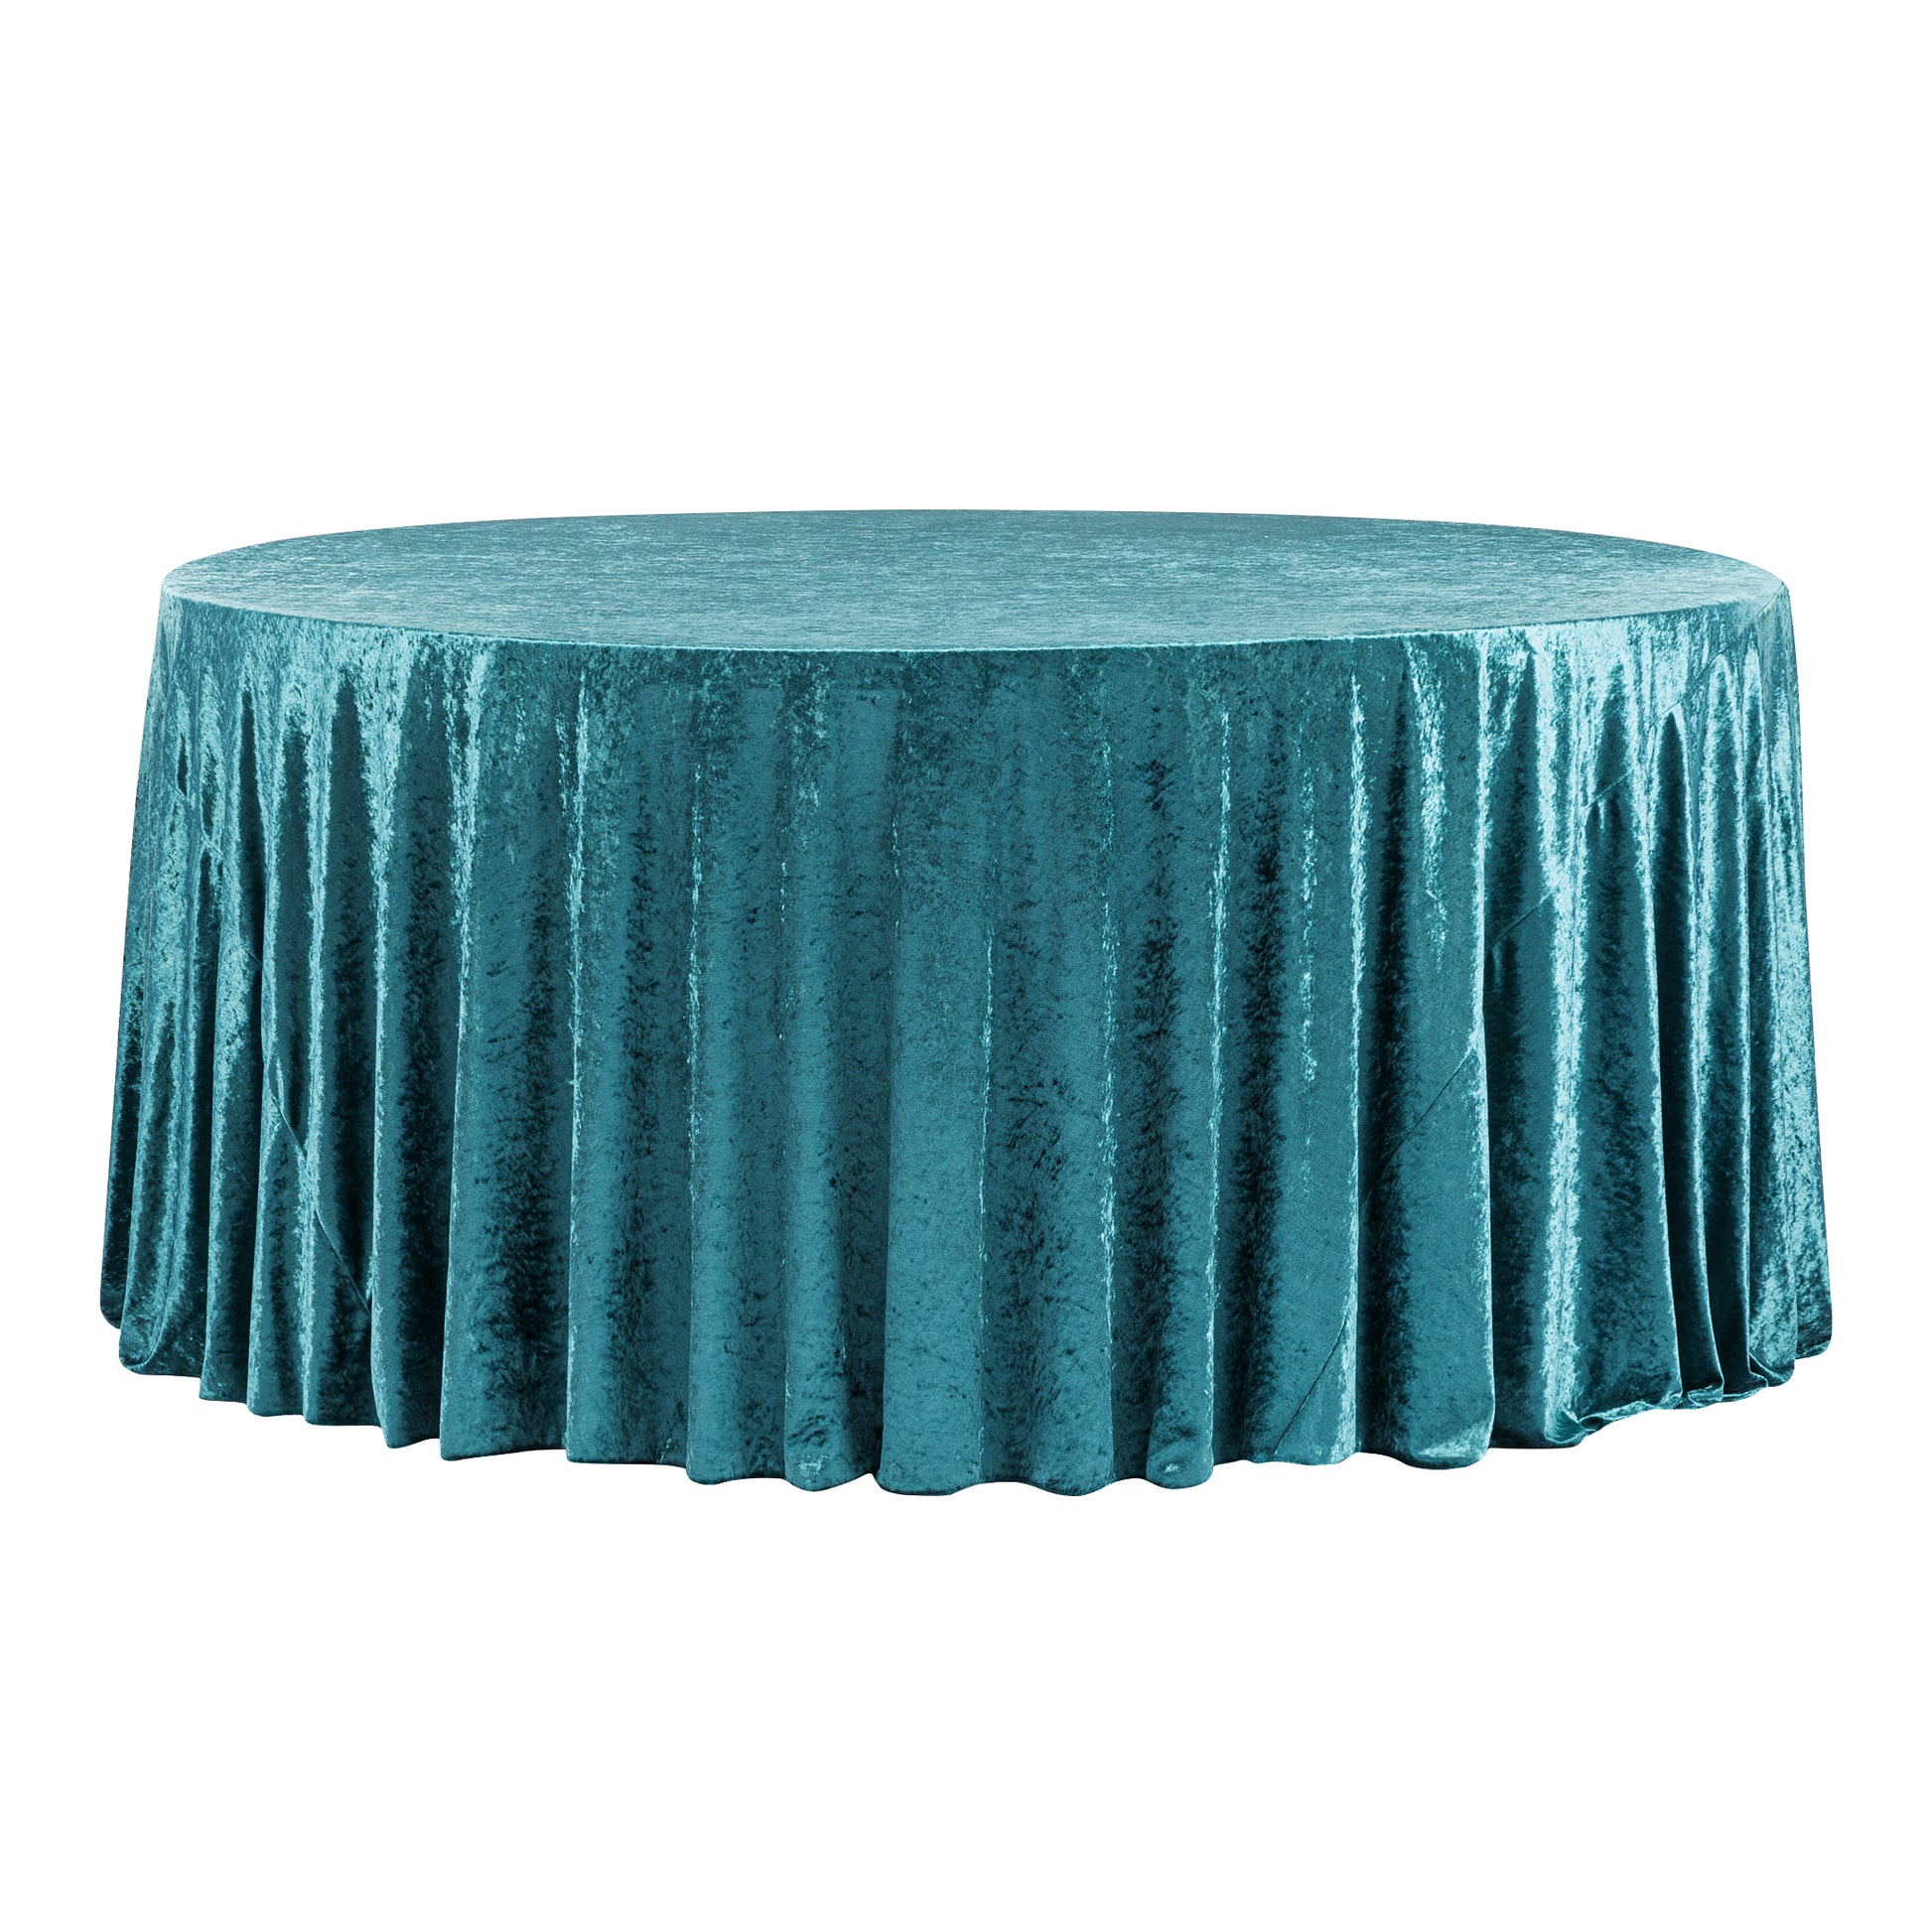 Velvet 132" Round Tablecloth - Dark Turquoise - CV Linens